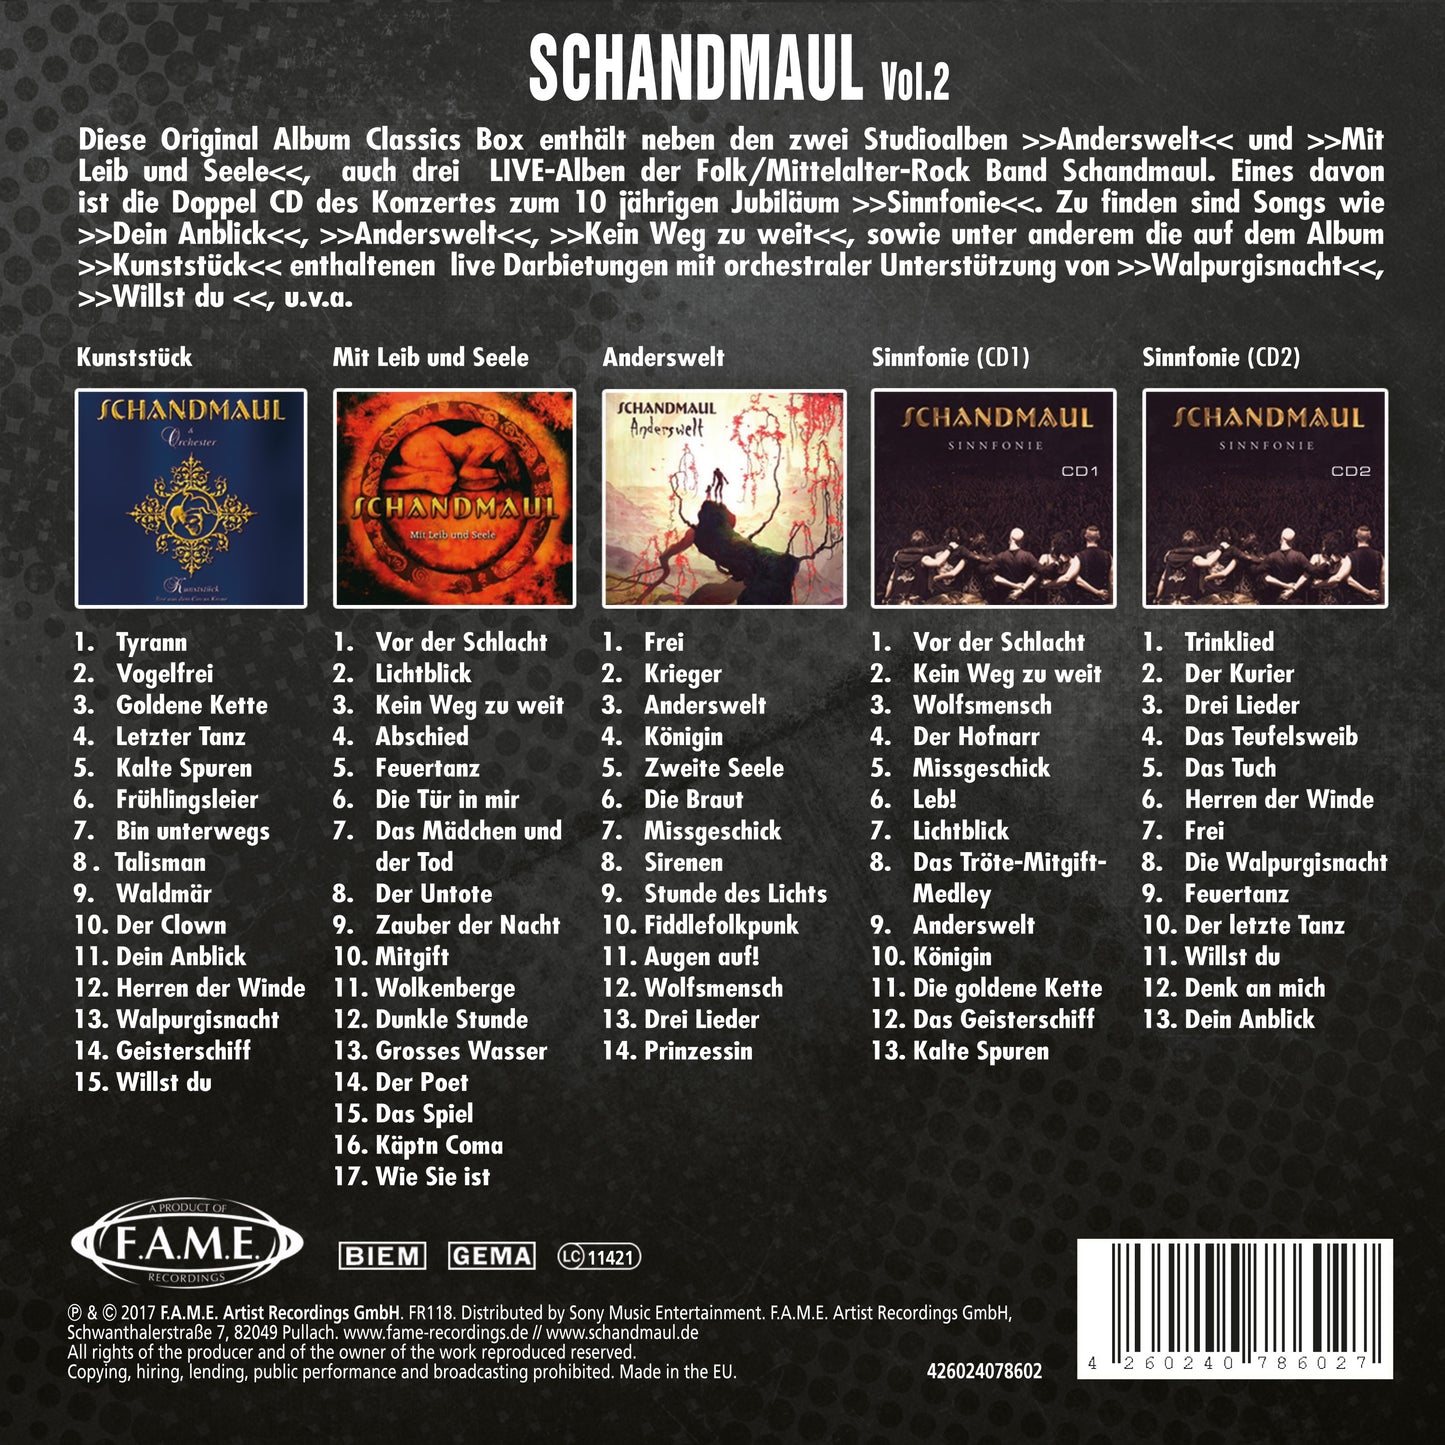 SCHANDMAUL - Original Album Classics Vol. 2 Box-Set